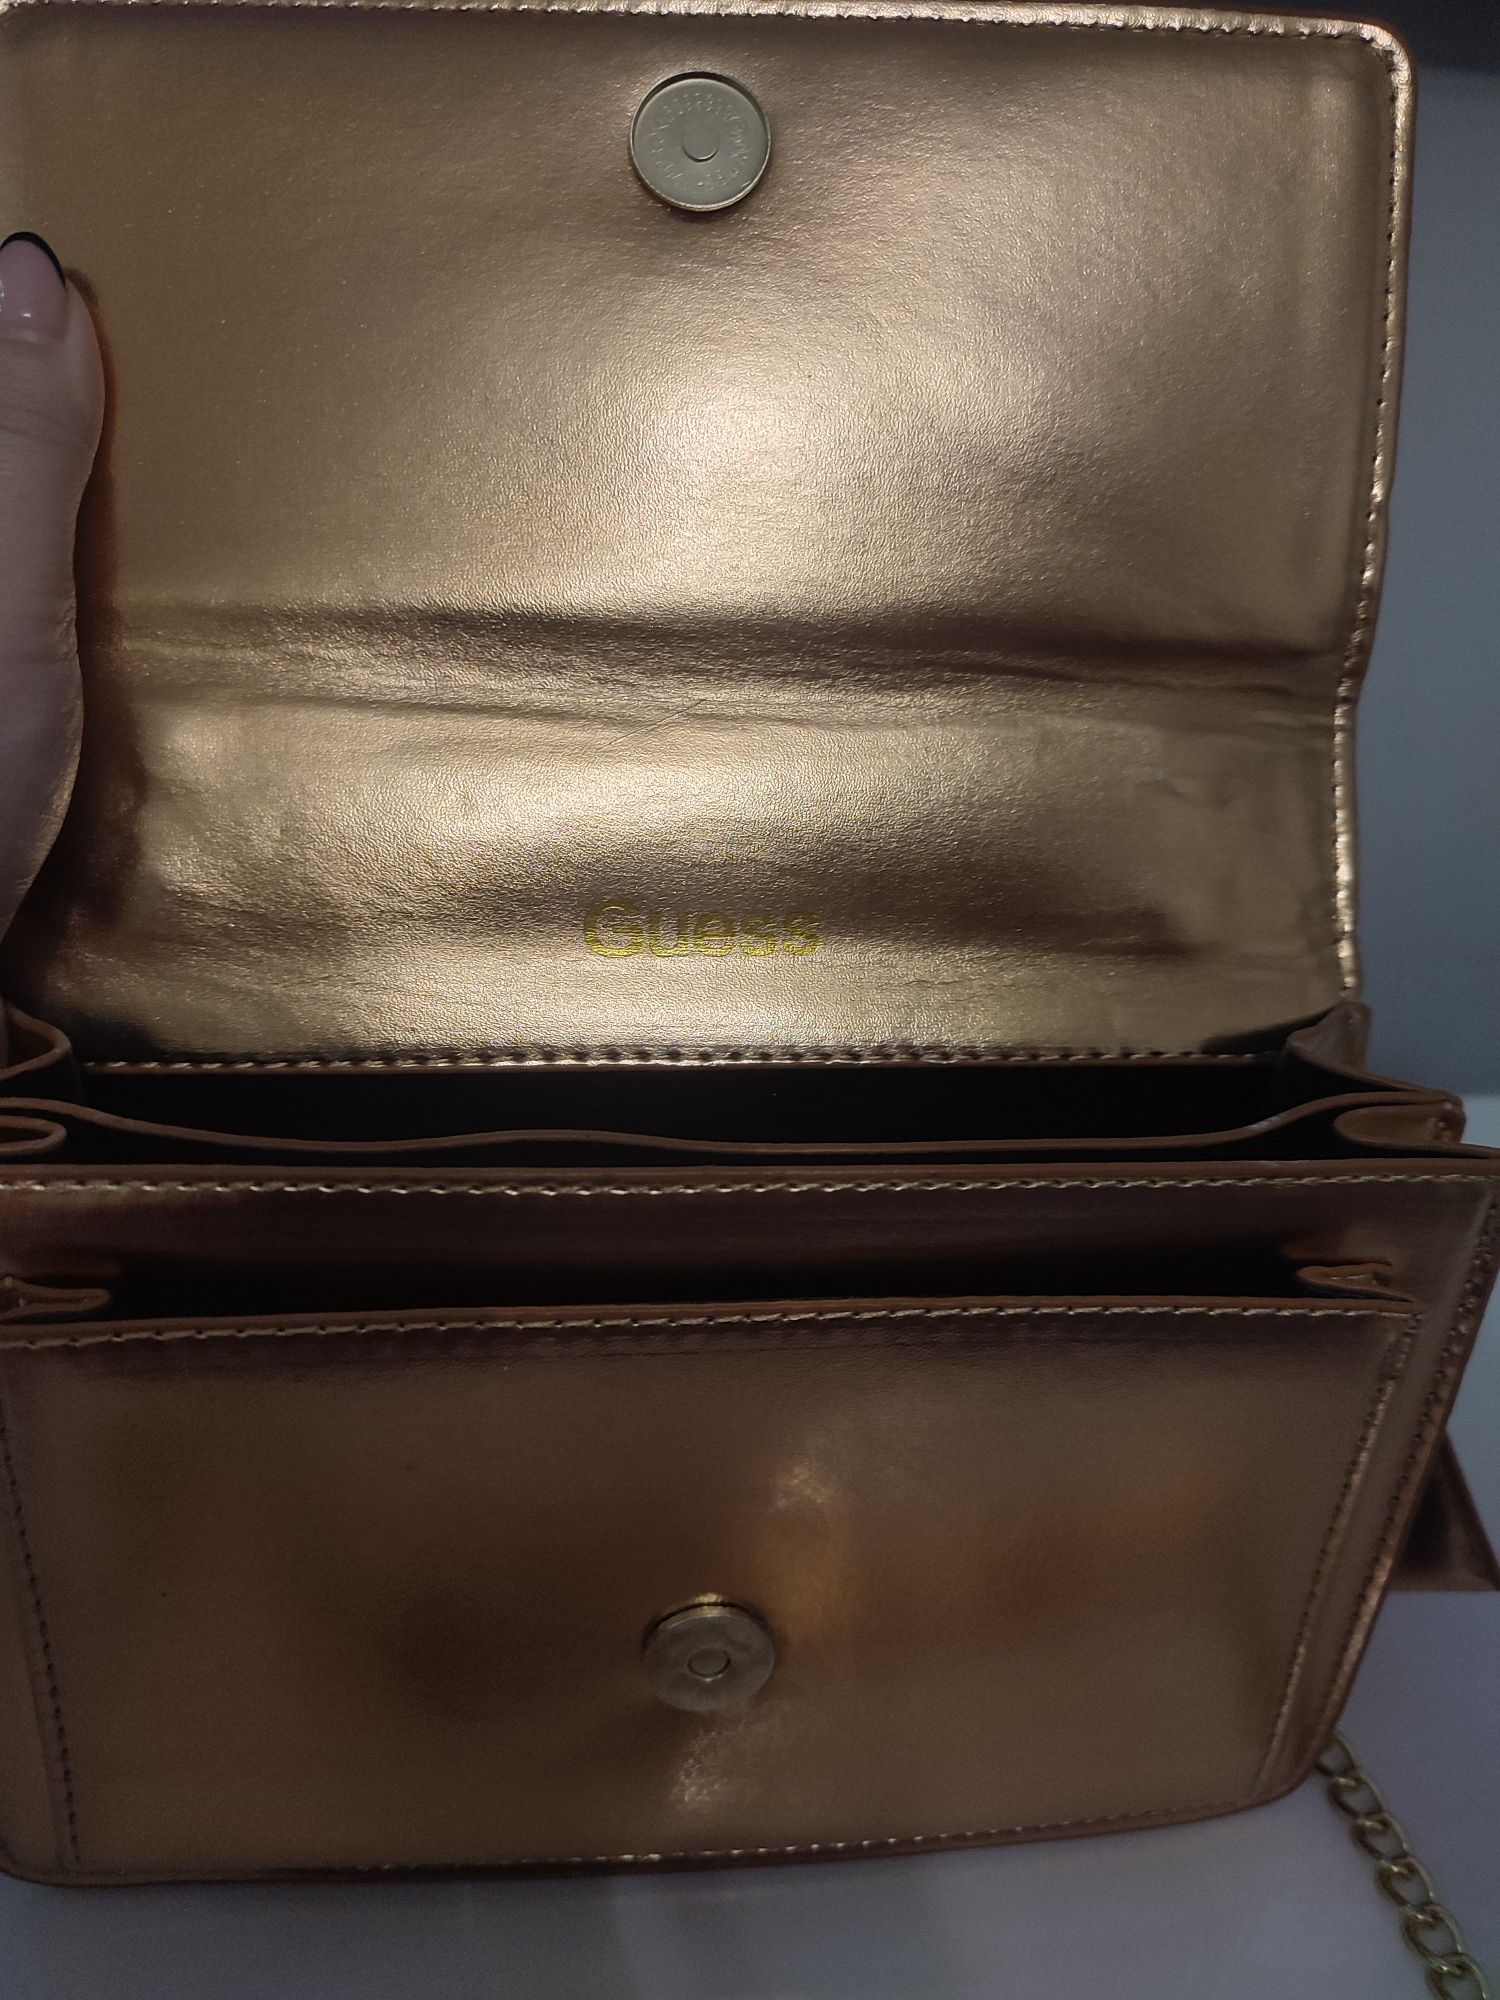 Nowa torebka ze złotym łańcuszkiem